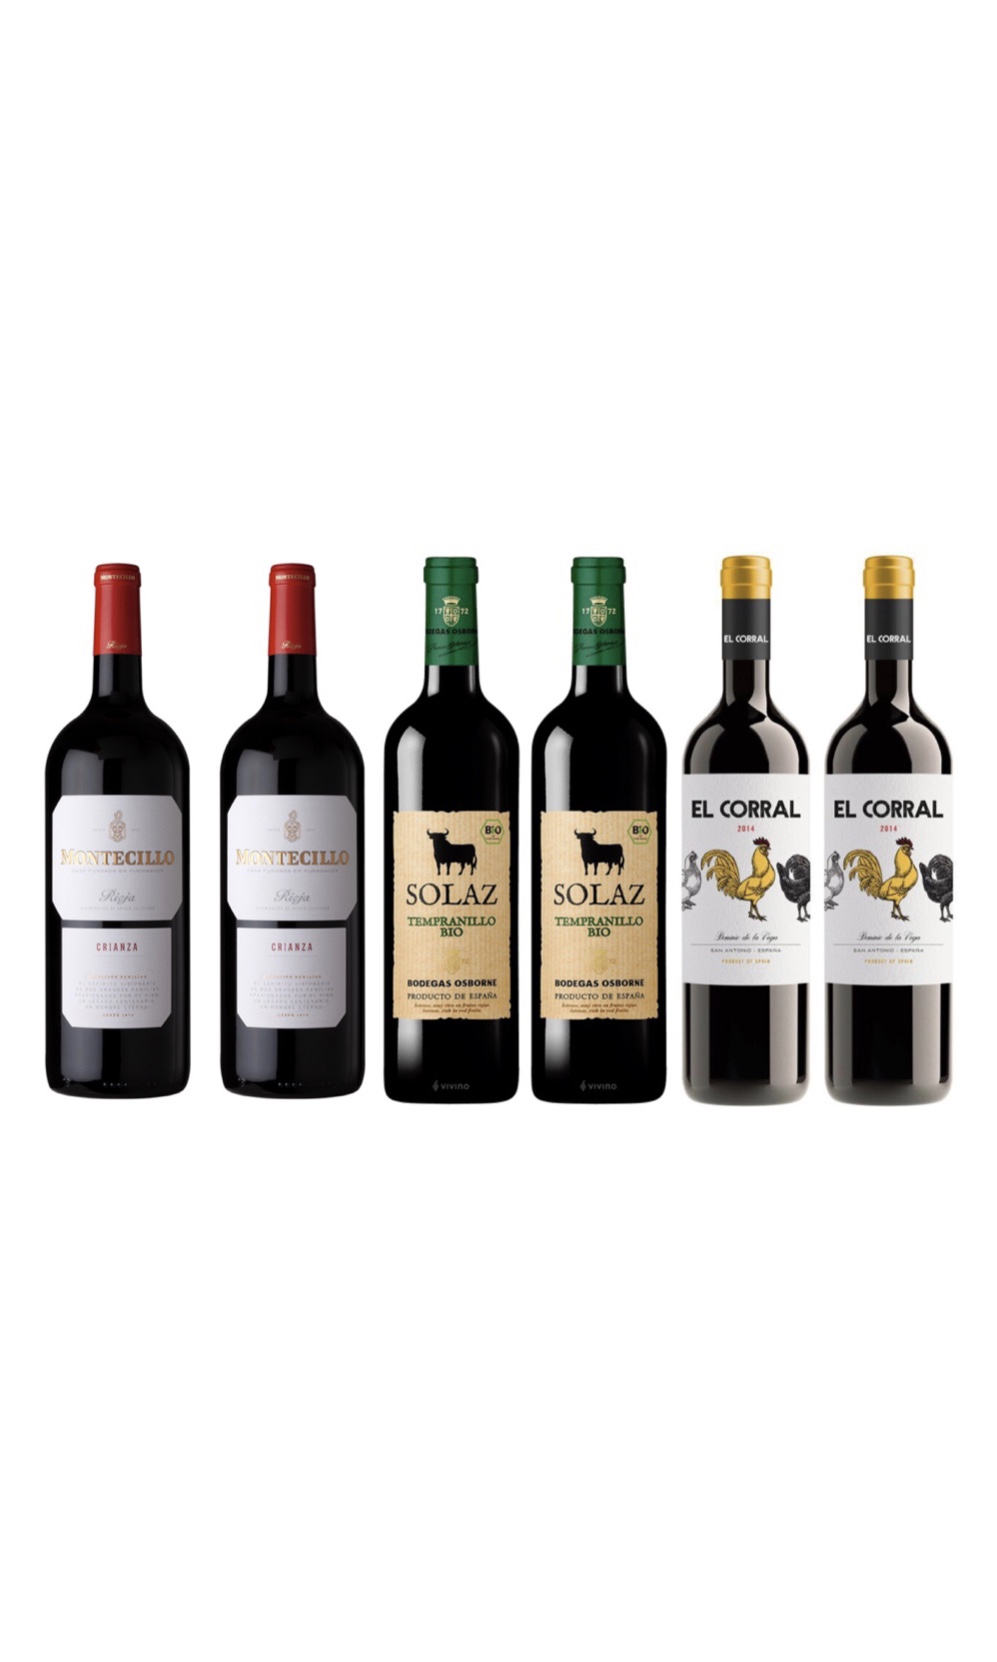 Spanish wine tasting bundle